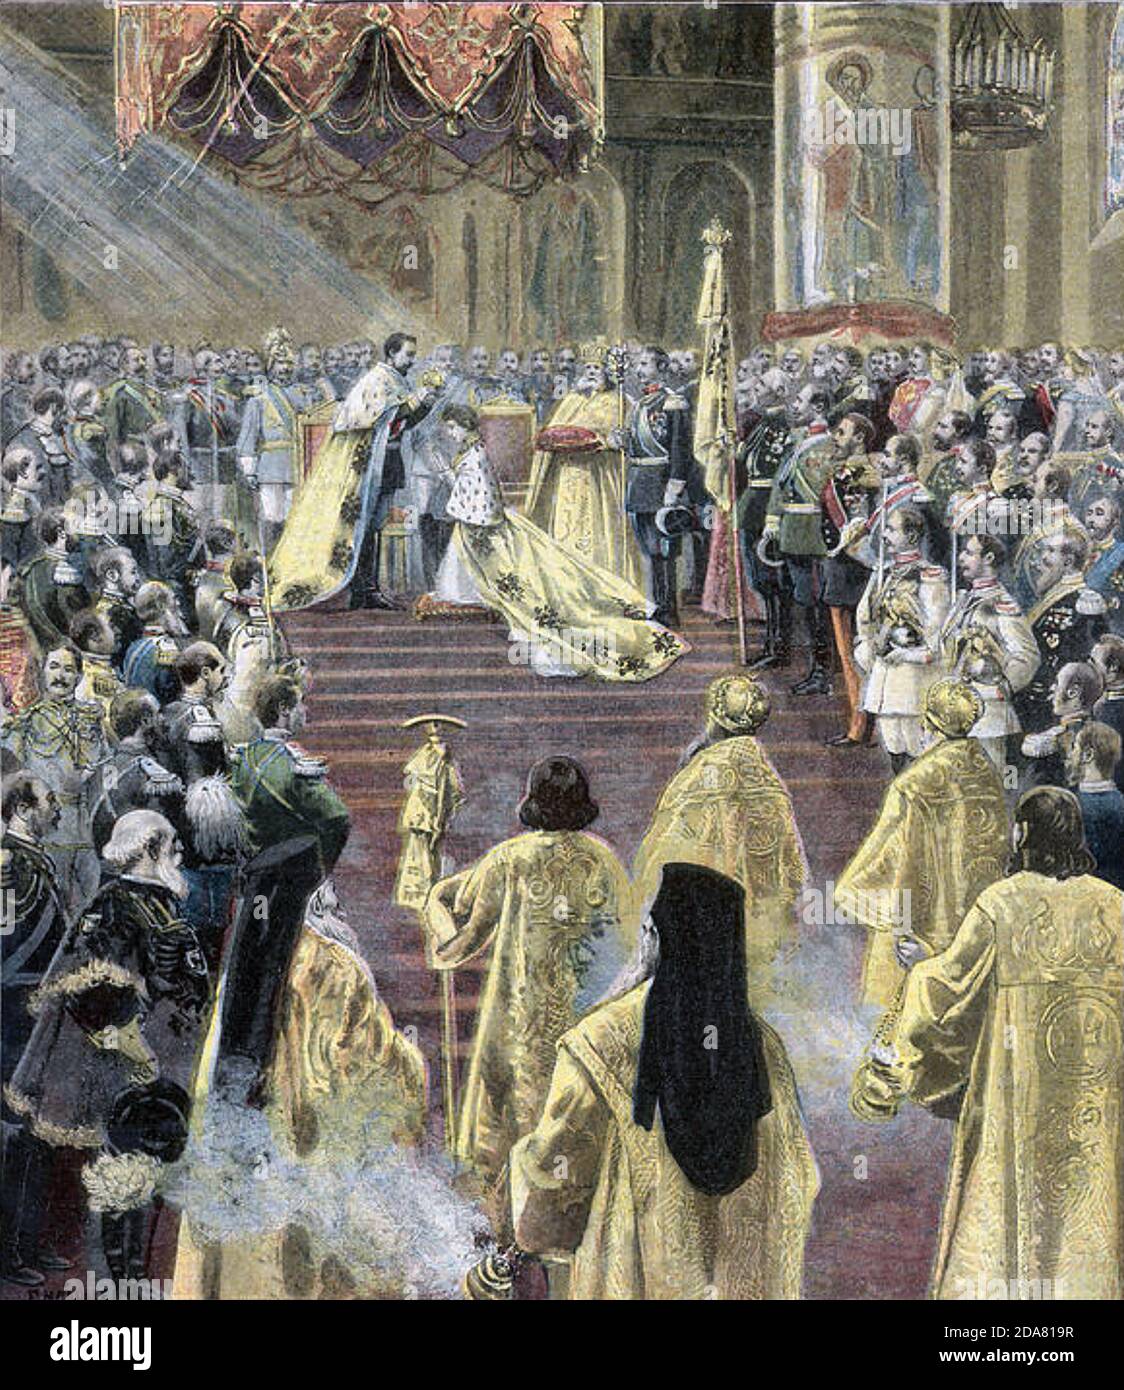 TSAR NICHOLAS II e Alexandra Feodorovna alla loro incoronazione 26 maggio 1896 nella Cattedrale di Uspensky all'interno del Cremlino Foto Stock